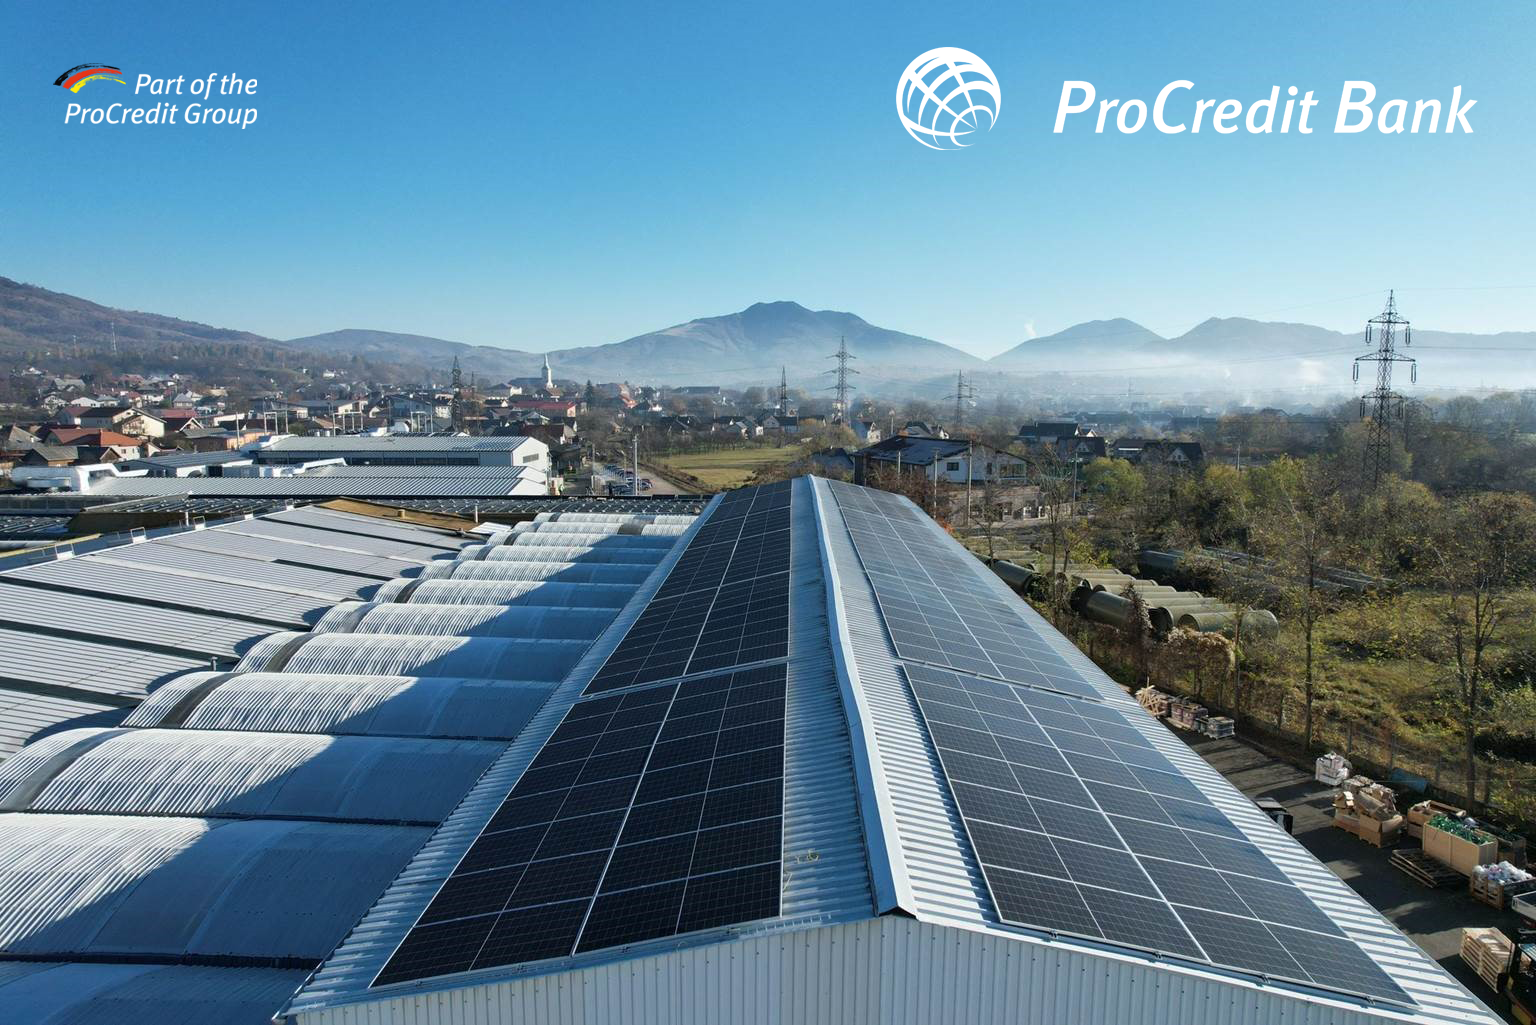 ProCredit Bank România a finanțat cu 3,15 milioane de euro Grupul nextE pentru construirea unei centrale fotovoltaice de 7.4 MWp